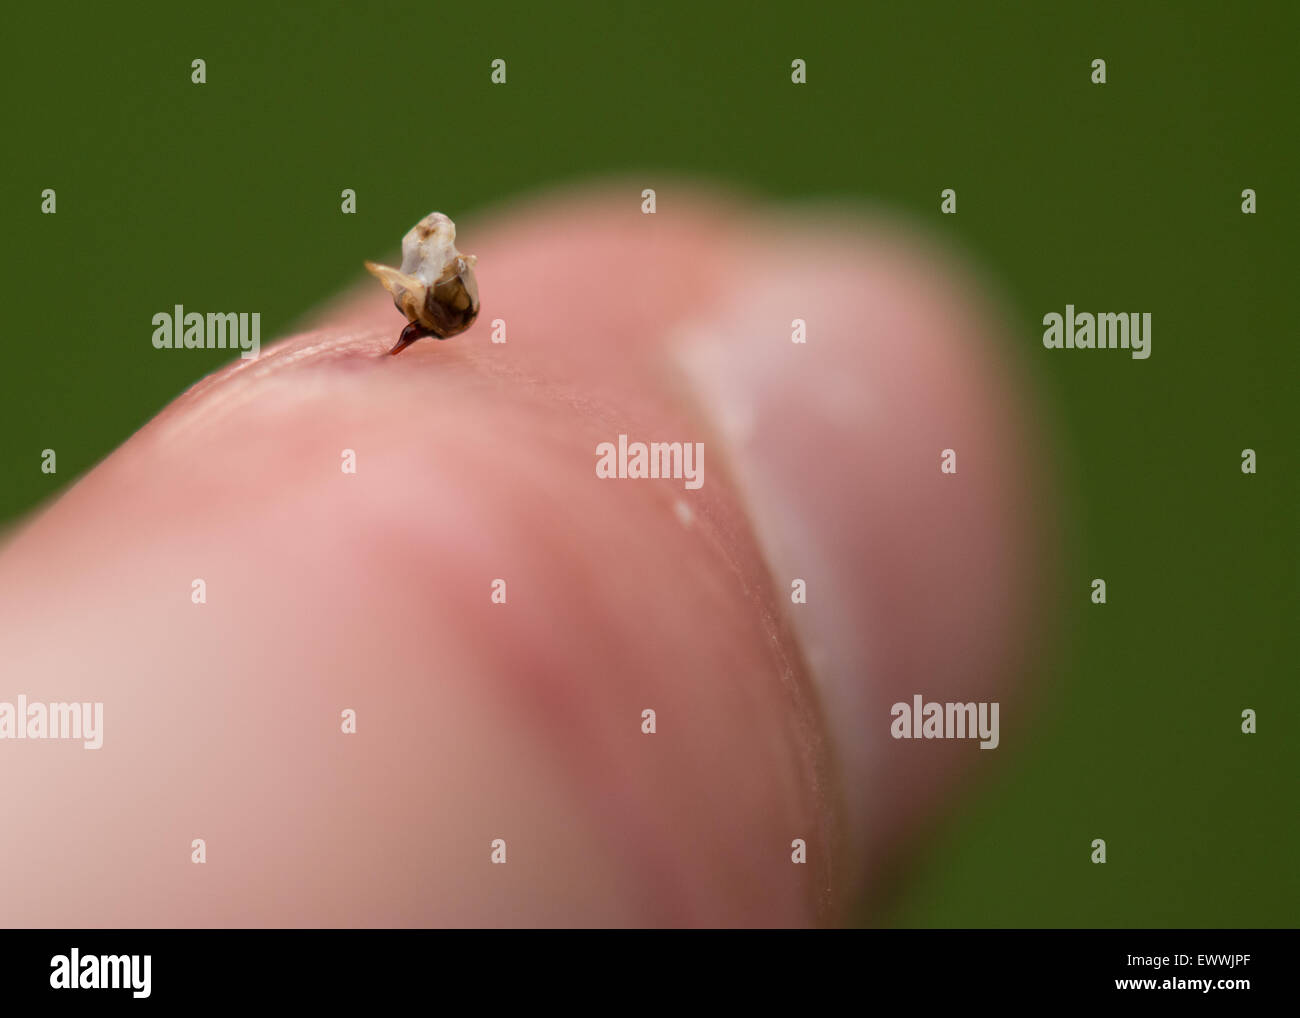 Abeille à miel (Apis) stinger - avec une partie du tube digestif et des nerfs et muscles - dans un doigt humain Banque D'Images